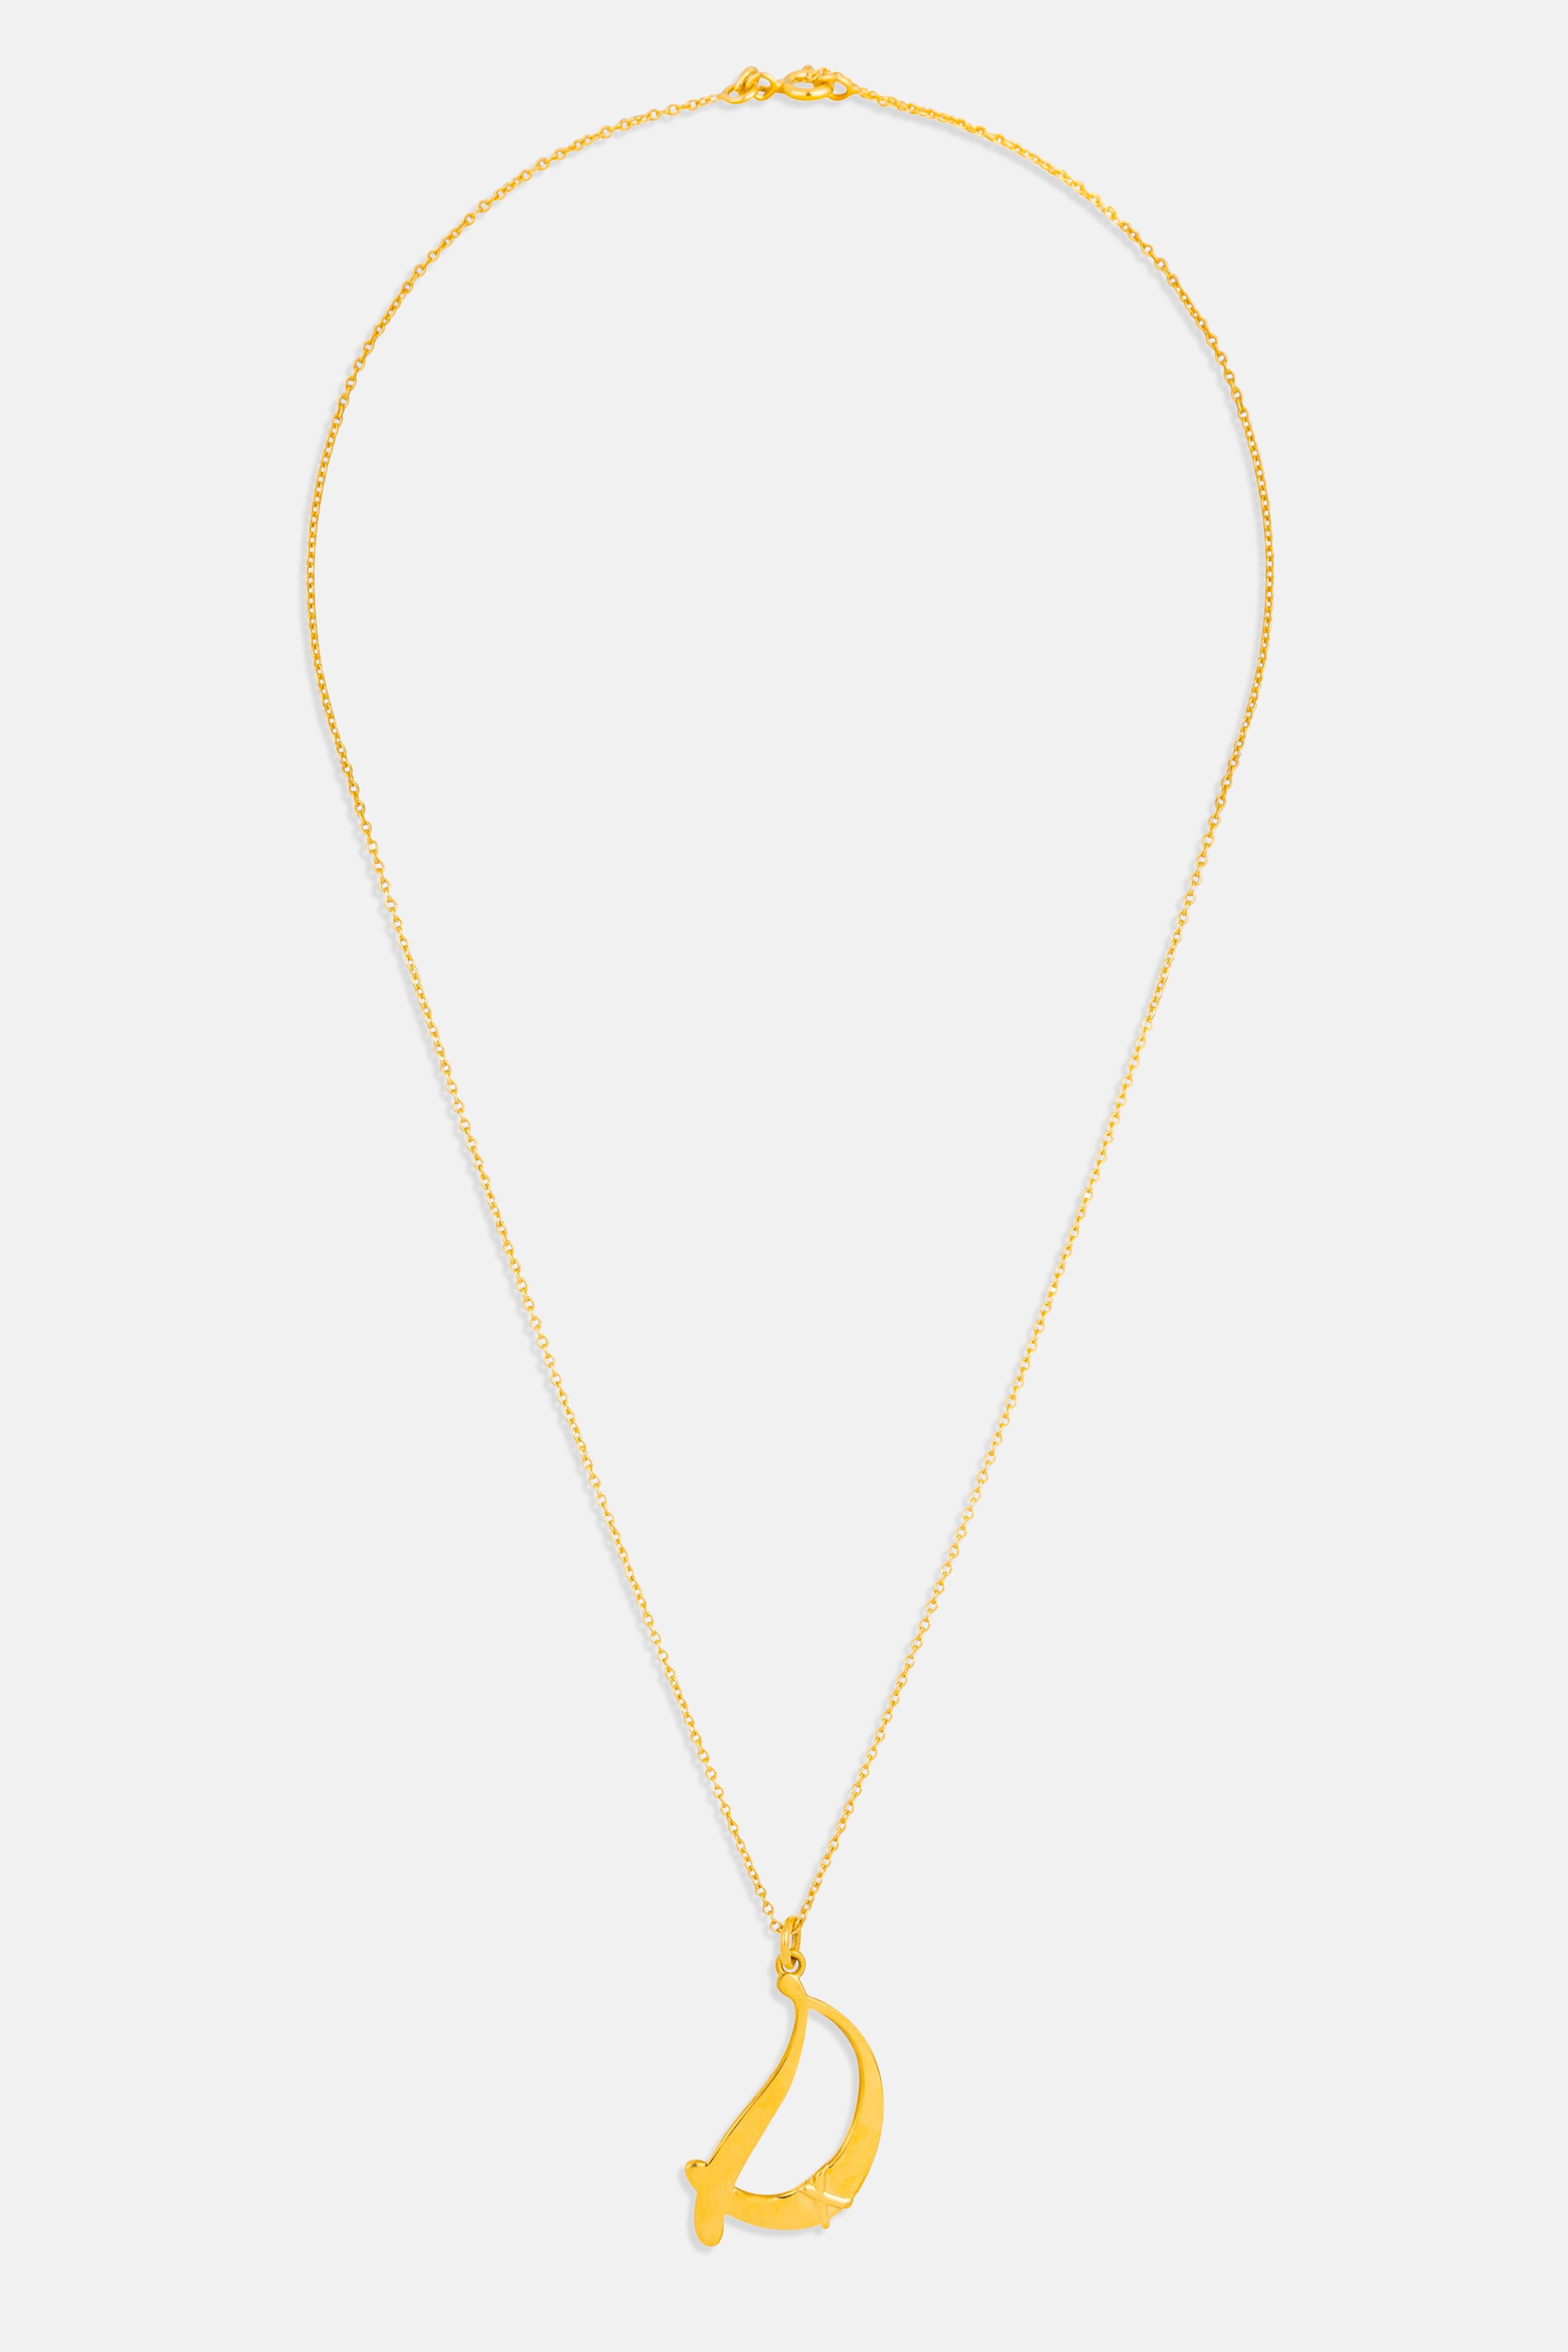 letter d necklace pendant Mamour Paris jewellery